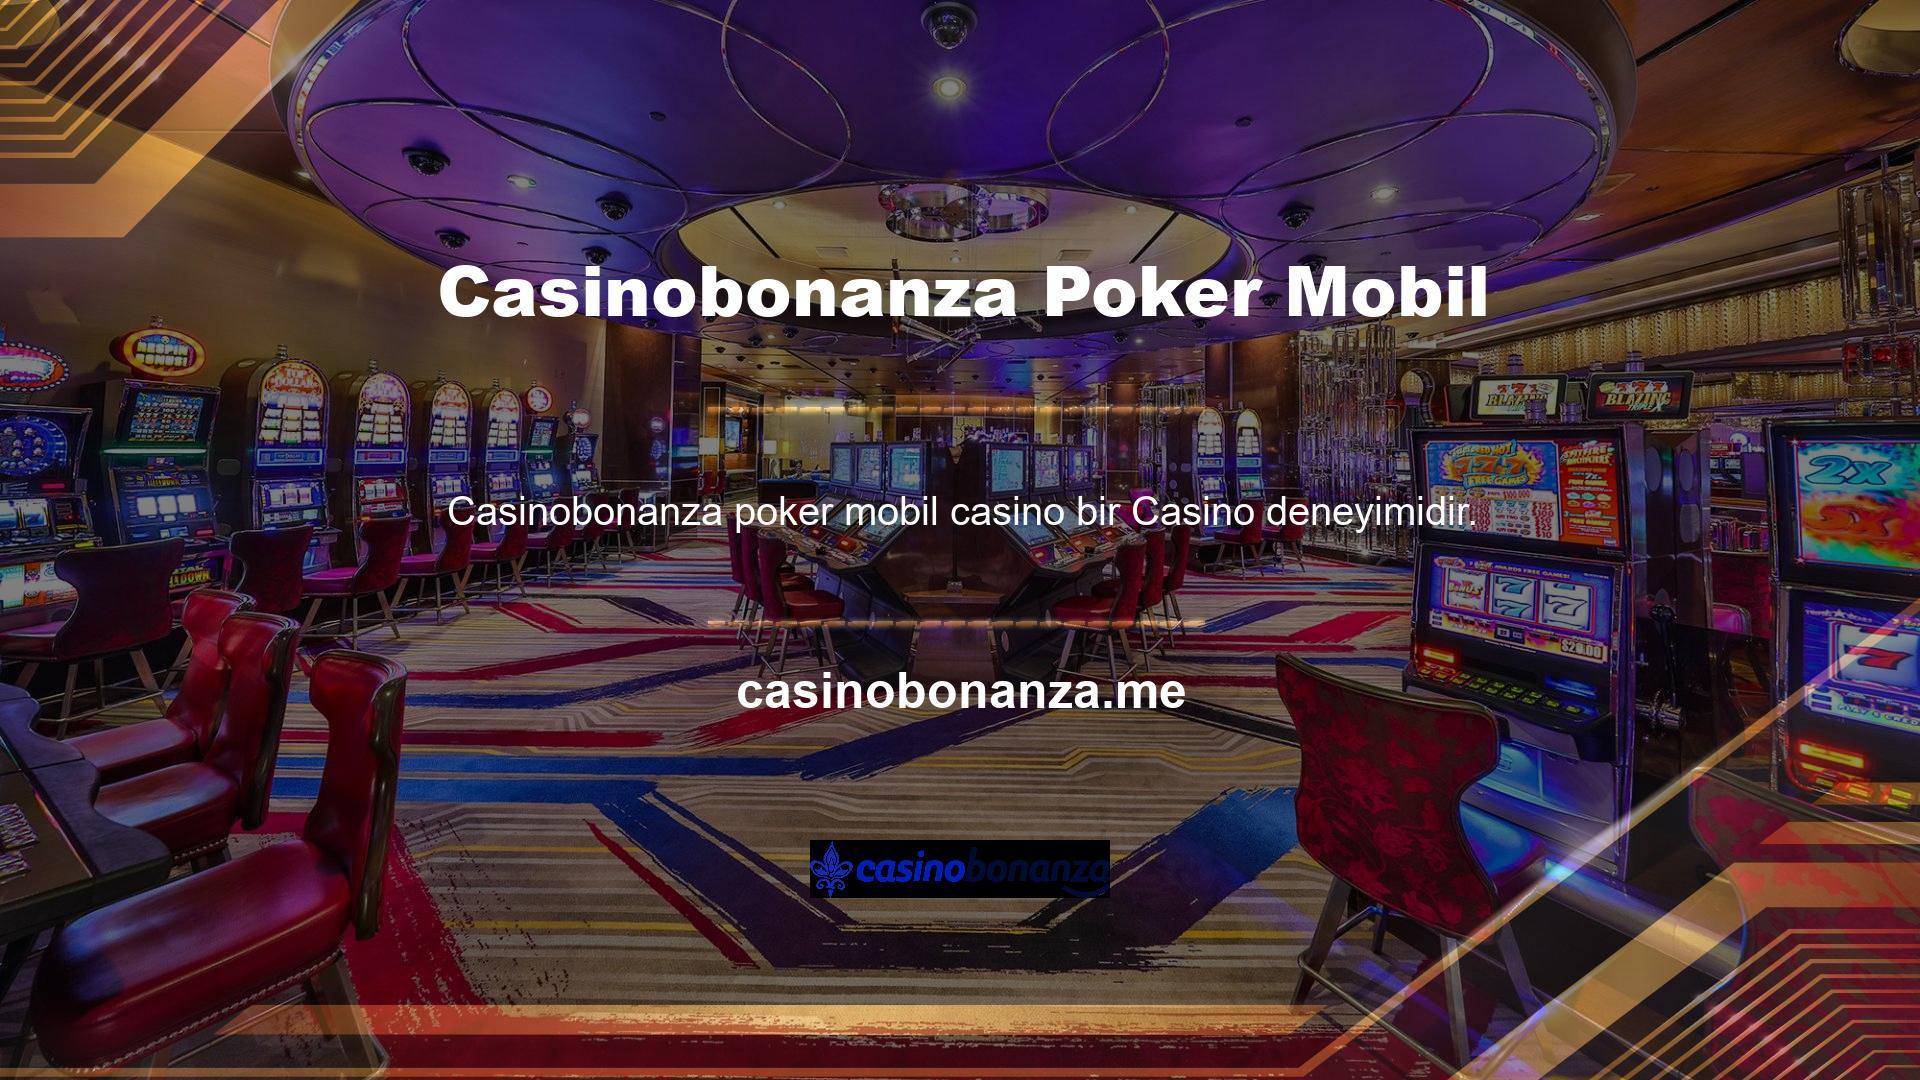 Casinobonanza canlı casino oyunları genellikle popüler poker oyunlarına sahiptir